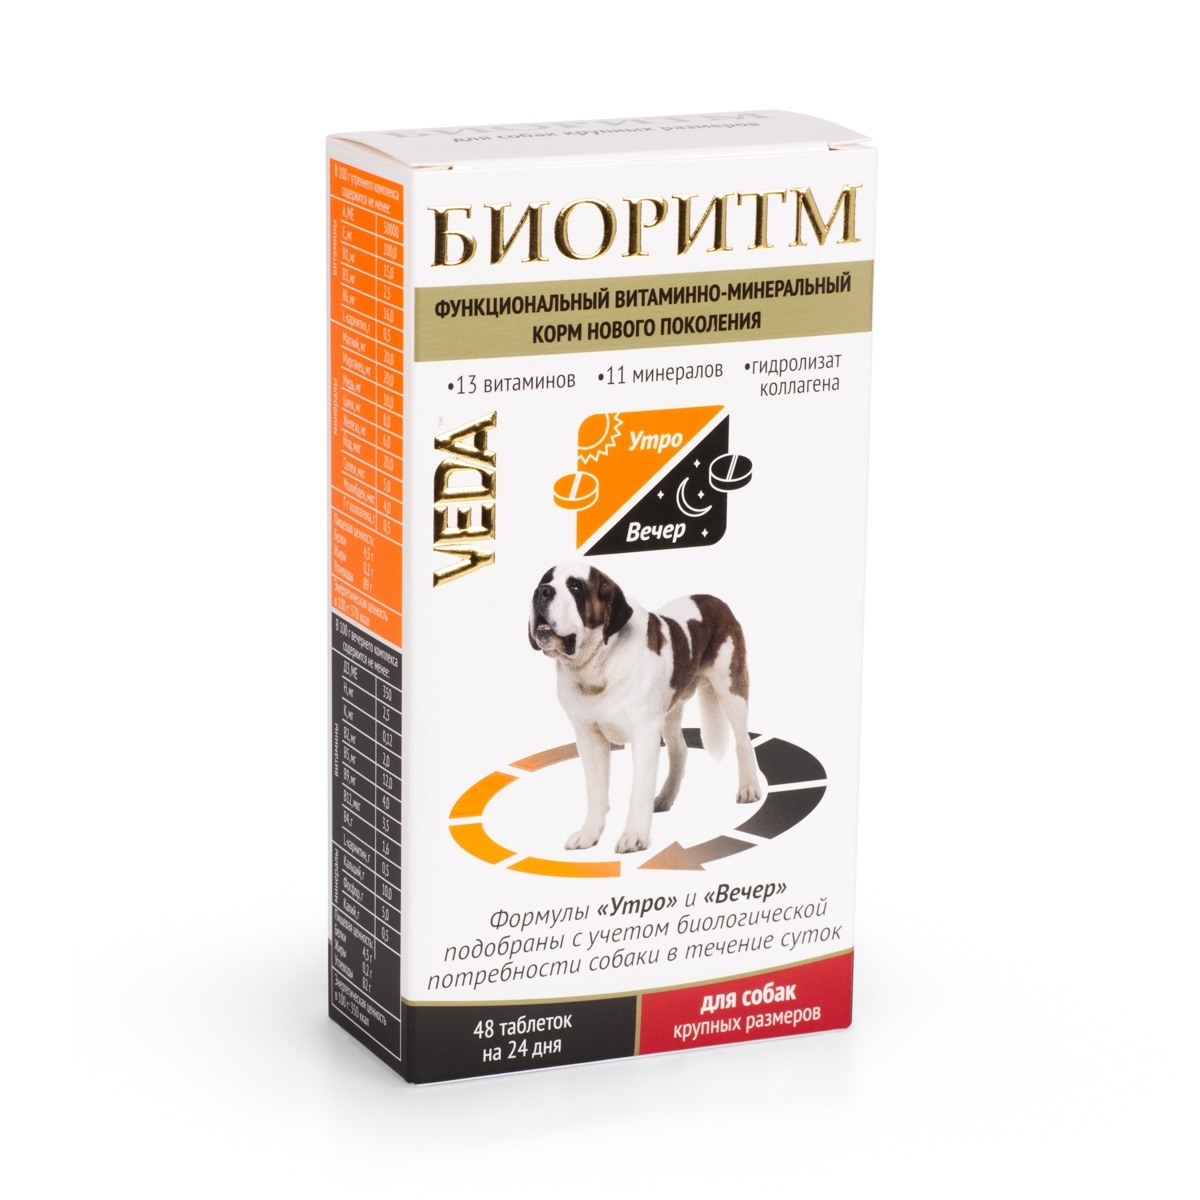 Веда Веда биоритм витамины для собак крупных пород (20 г) веда веда шоколад темный для собак 45 г